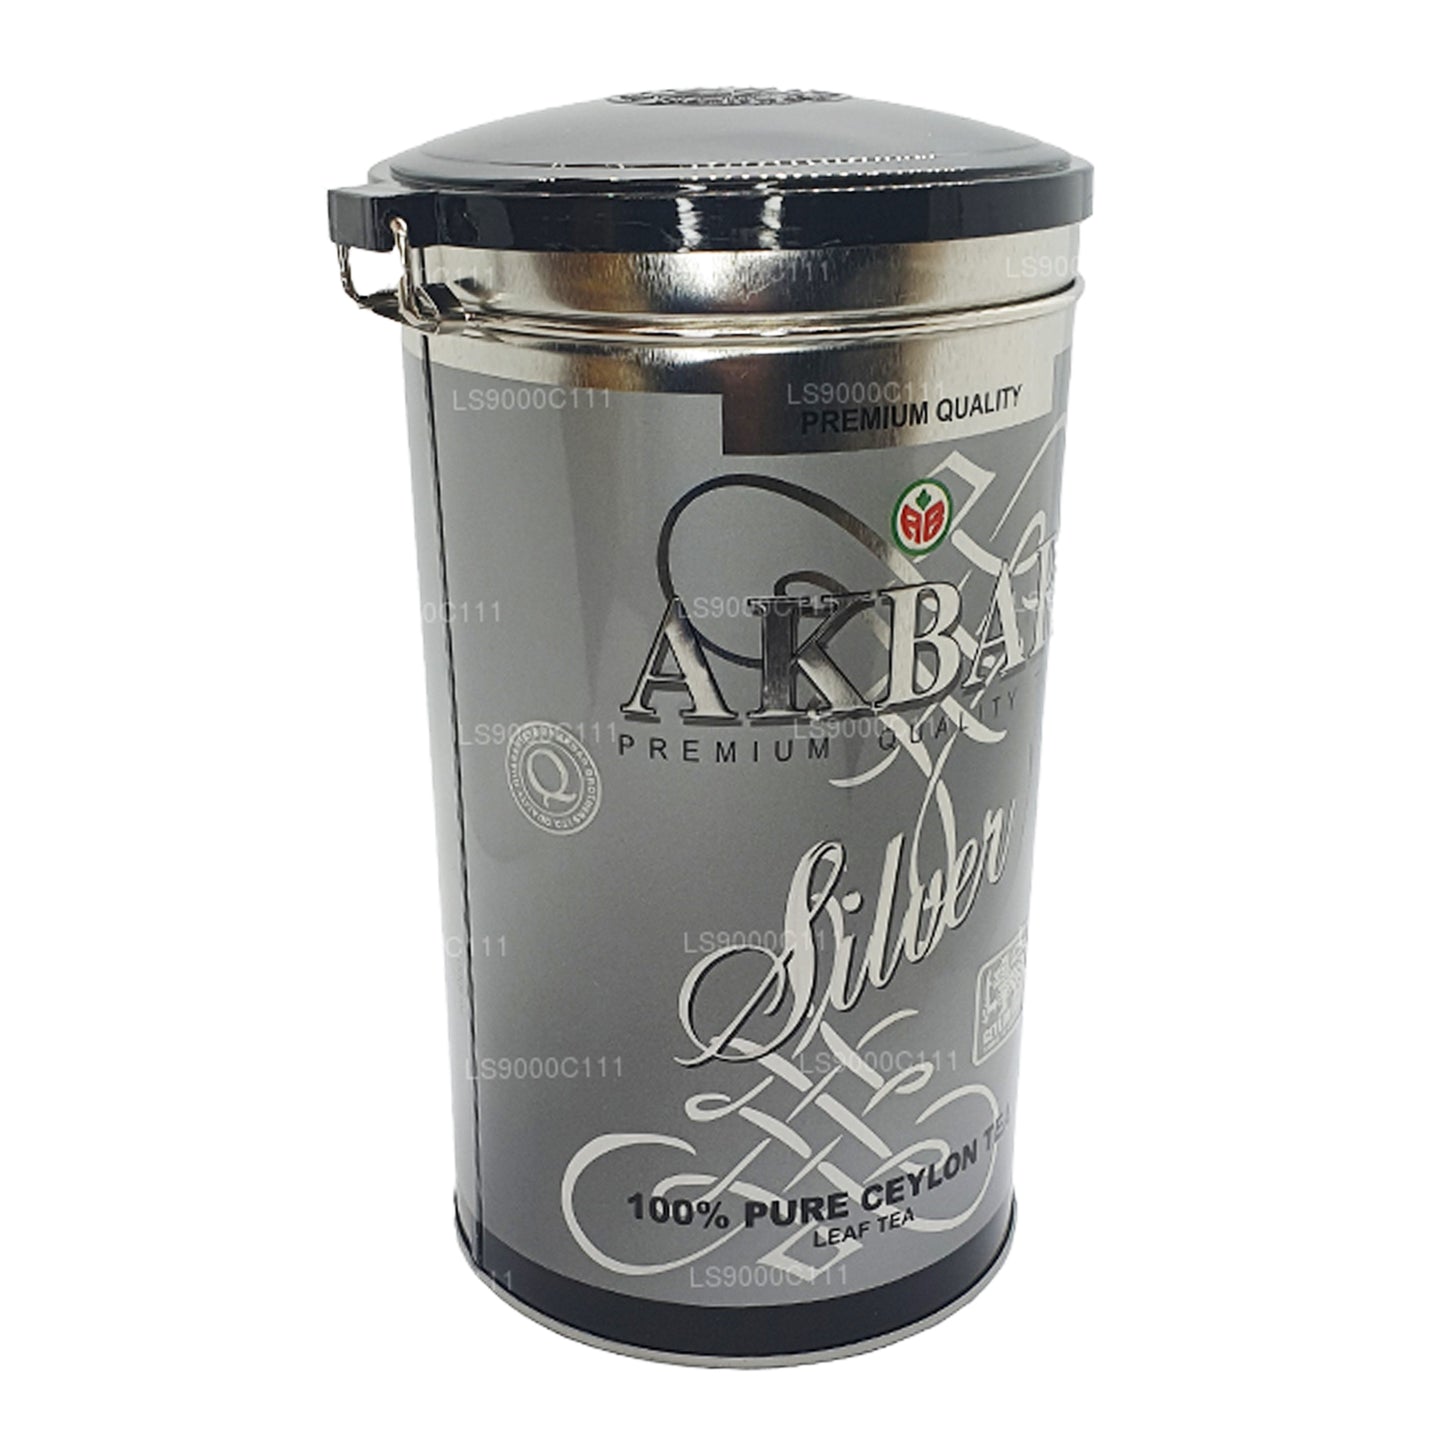 Akbar Silver Leaf Tea (300g)